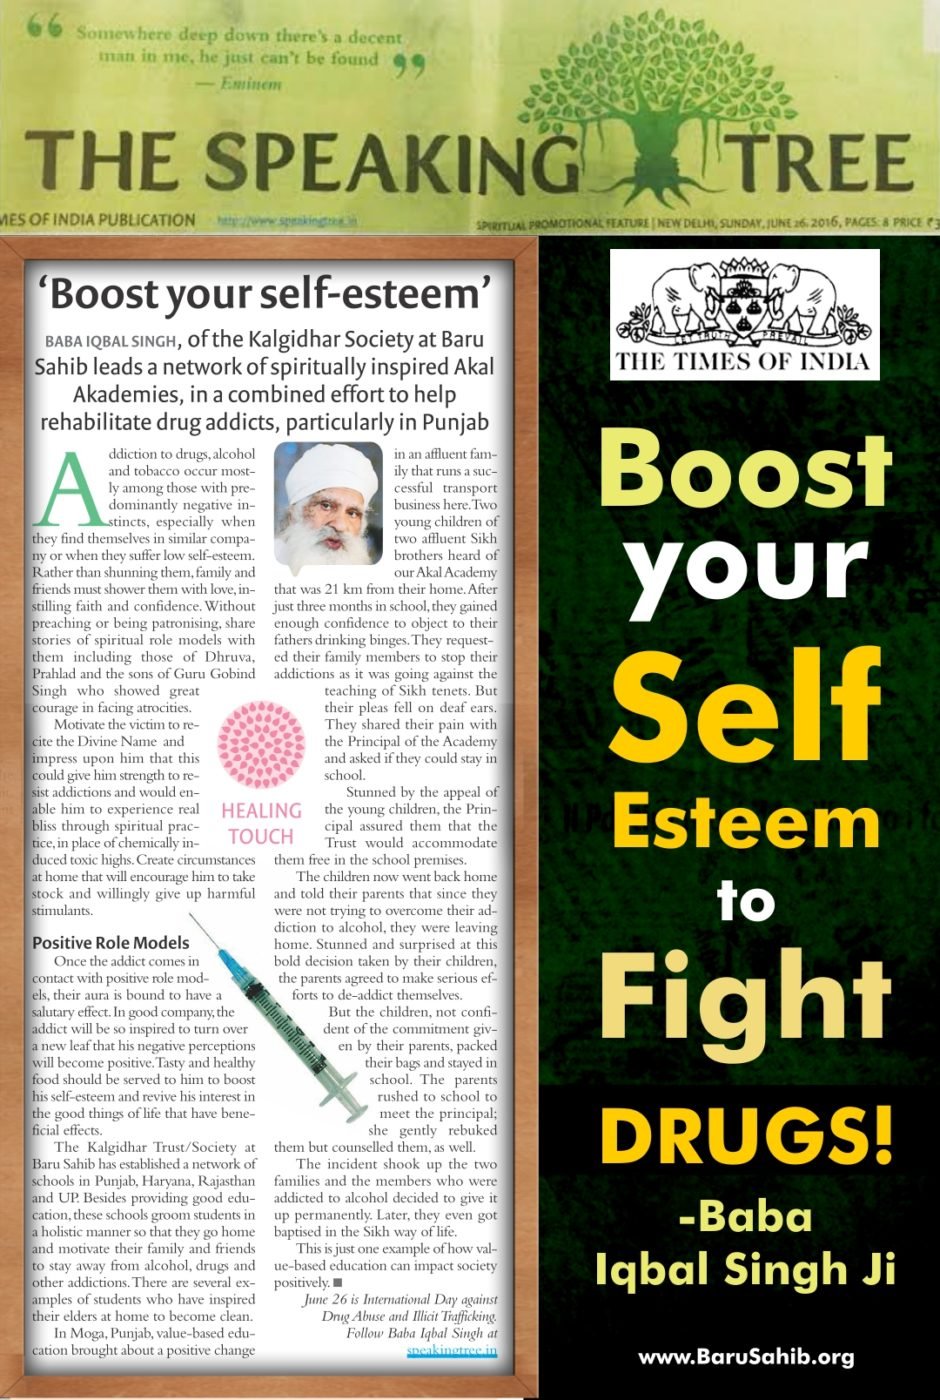 Boost your Self Esteem to Fight DRUGS! – Baba Iqbal Singh Ji